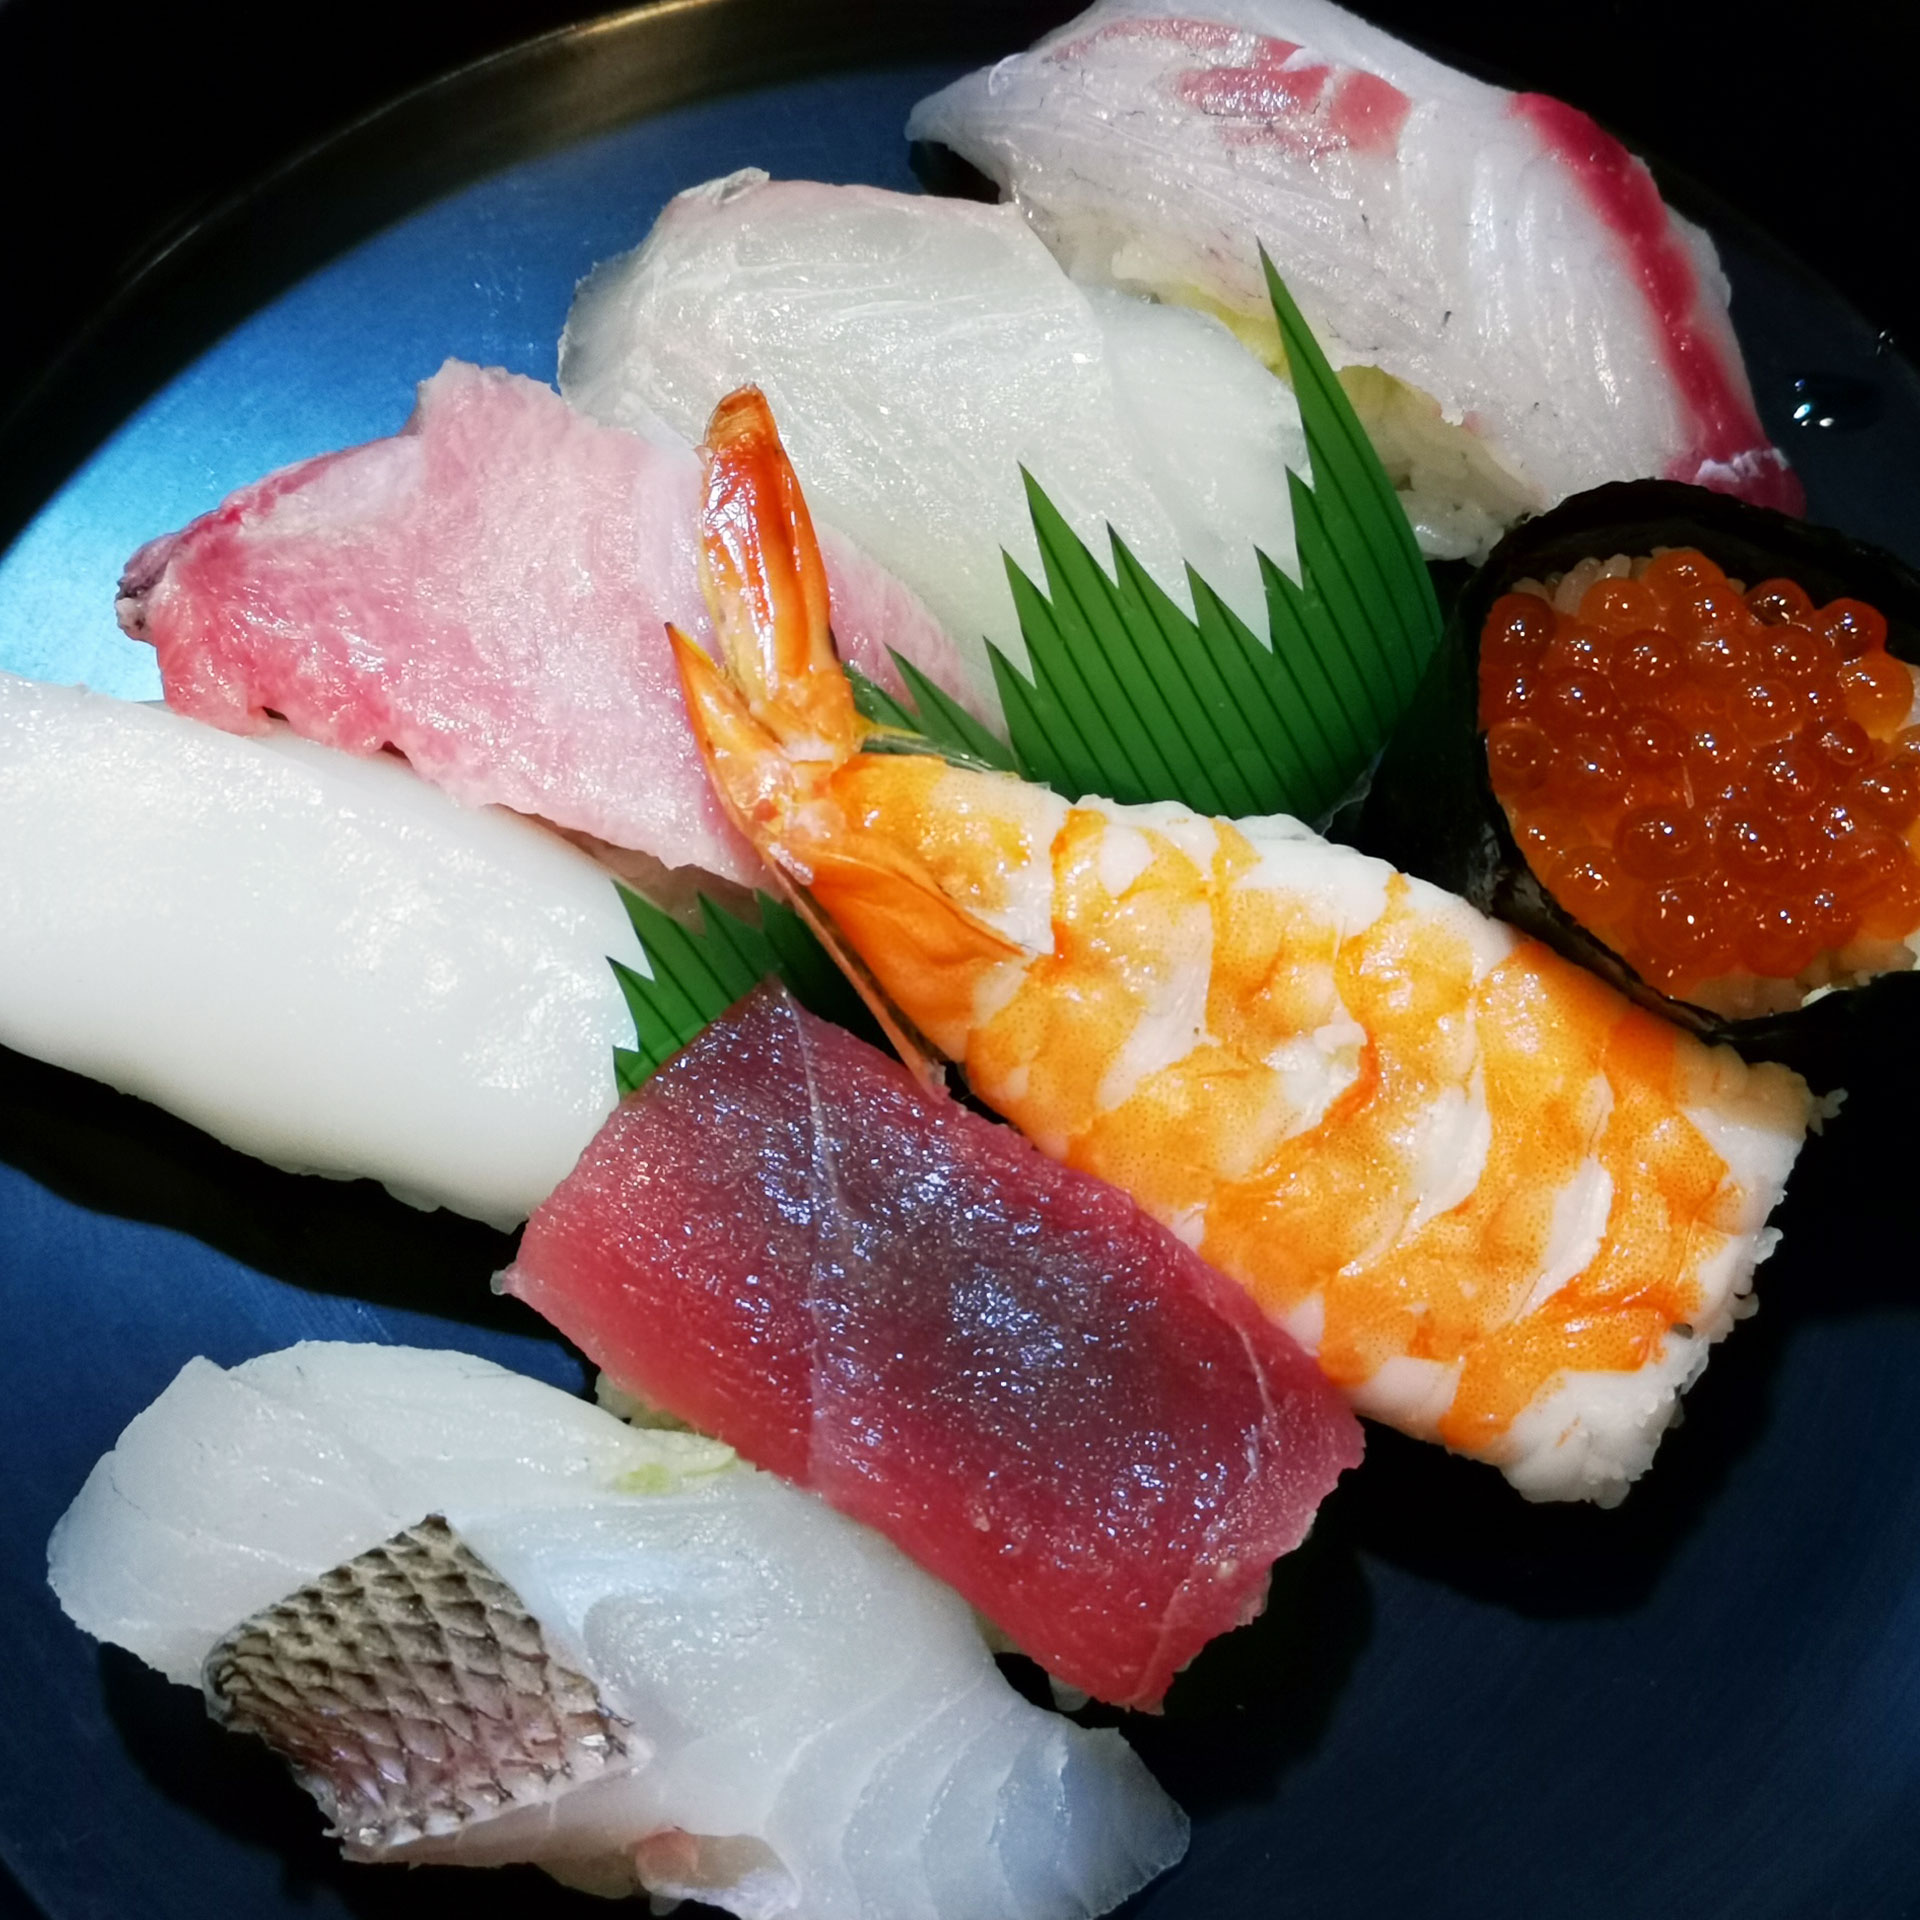 なにわ寿司 【尾道市久保】 Naniwa Sushi